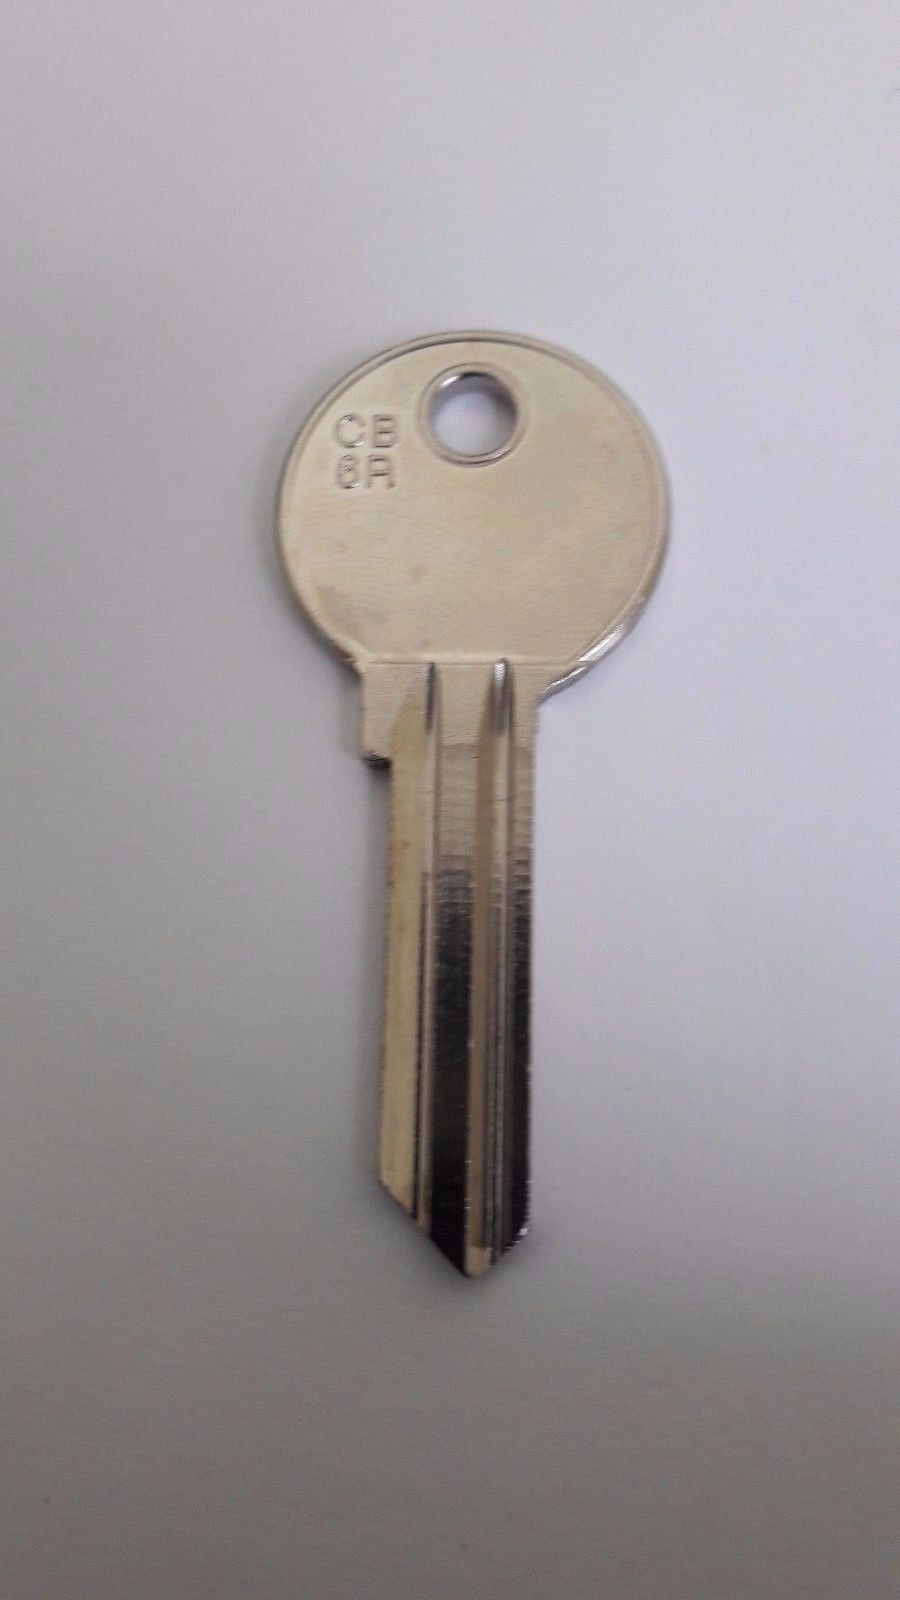 CB6R SILCA Corbin Key Blanks Pack 10 Quantity - $9.50